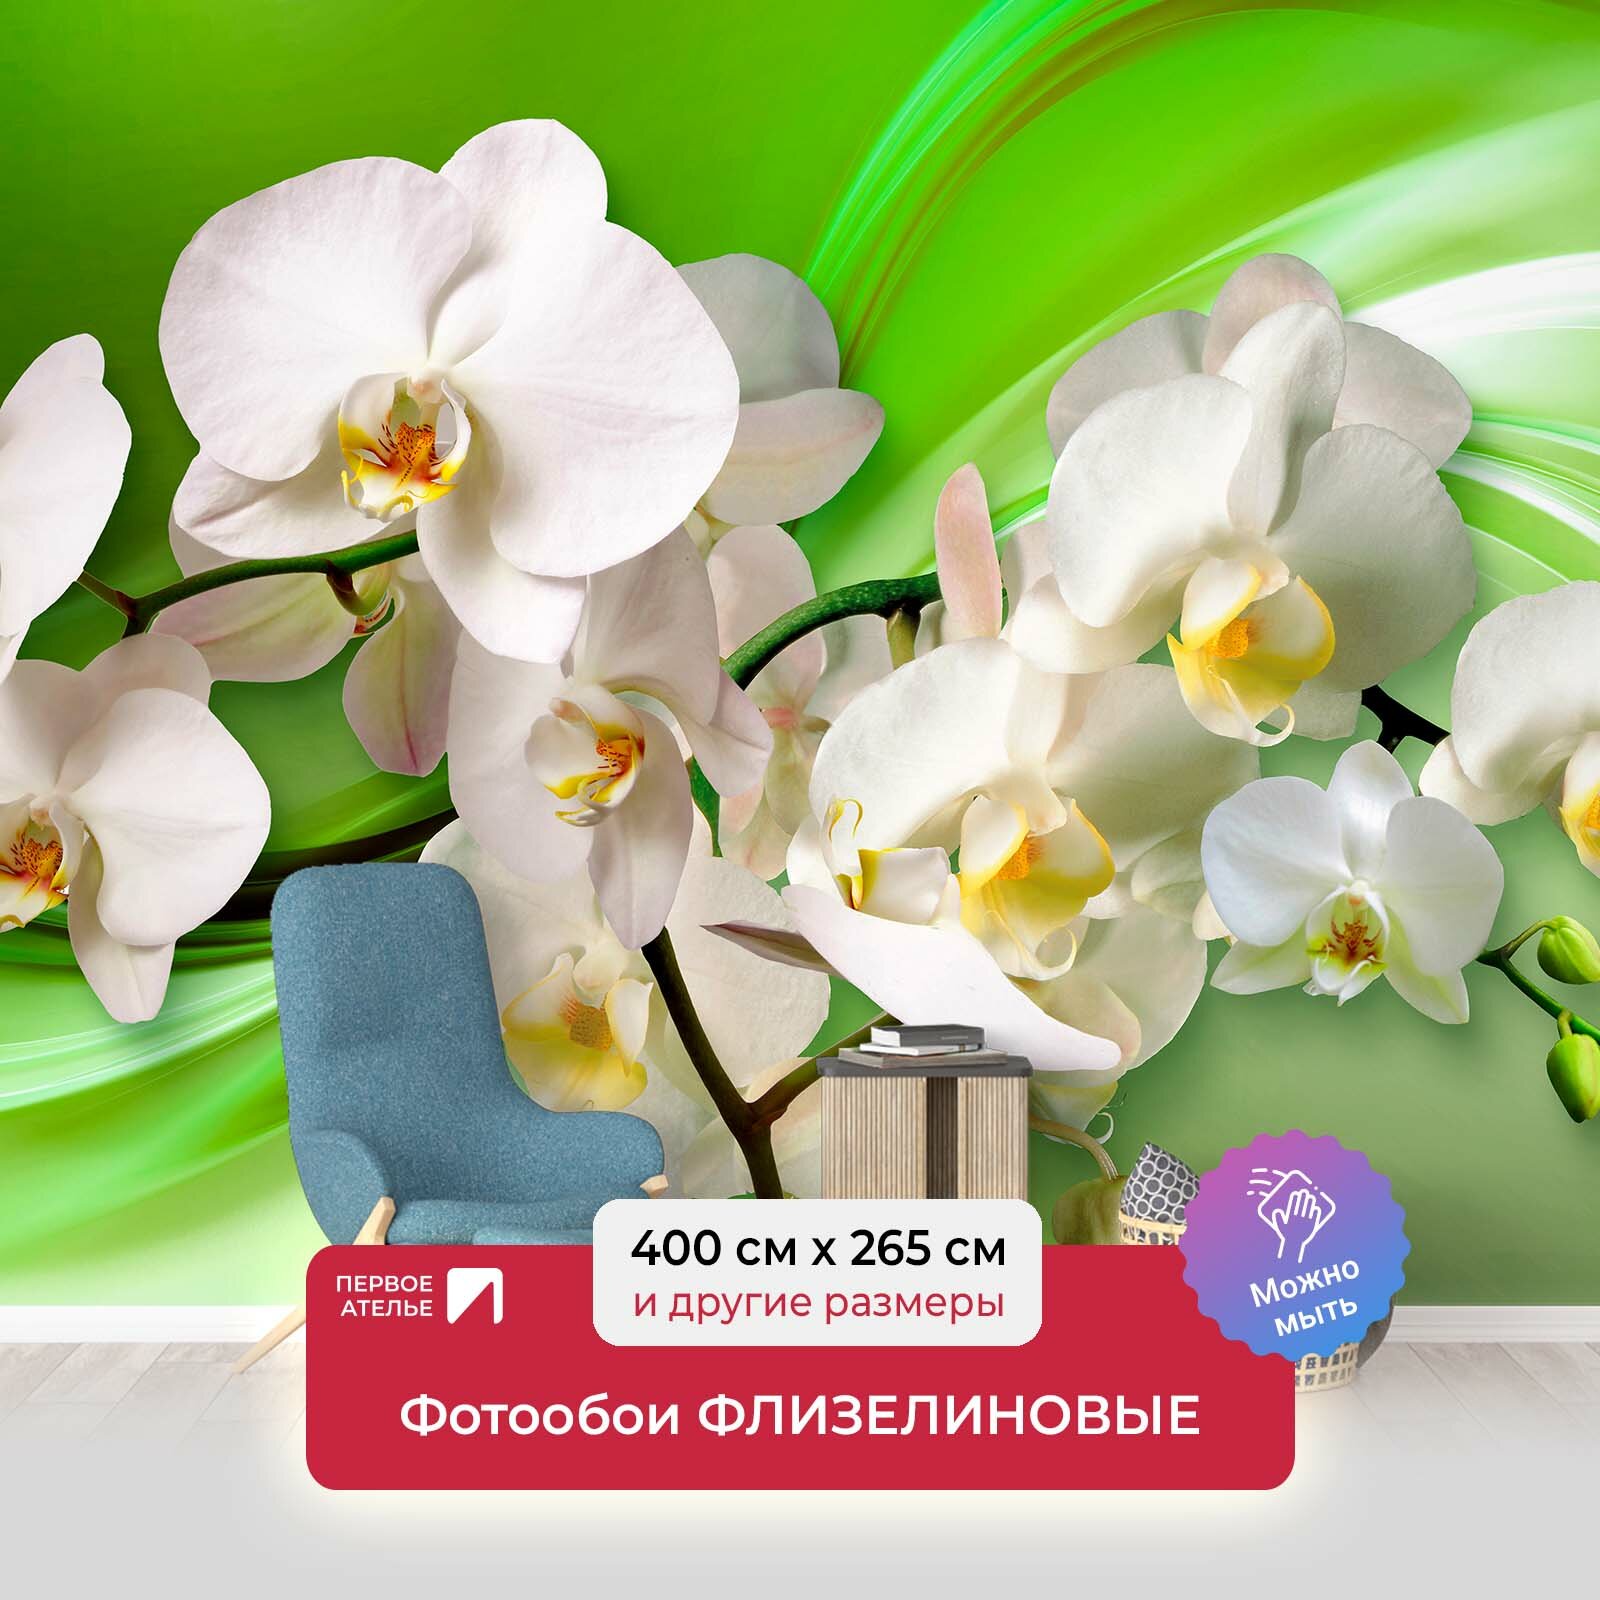 Фотообои на стену первое ателье "Орхидеи на зеленом шелке" 400х265 см (ШхВ), флизелиновые Premium